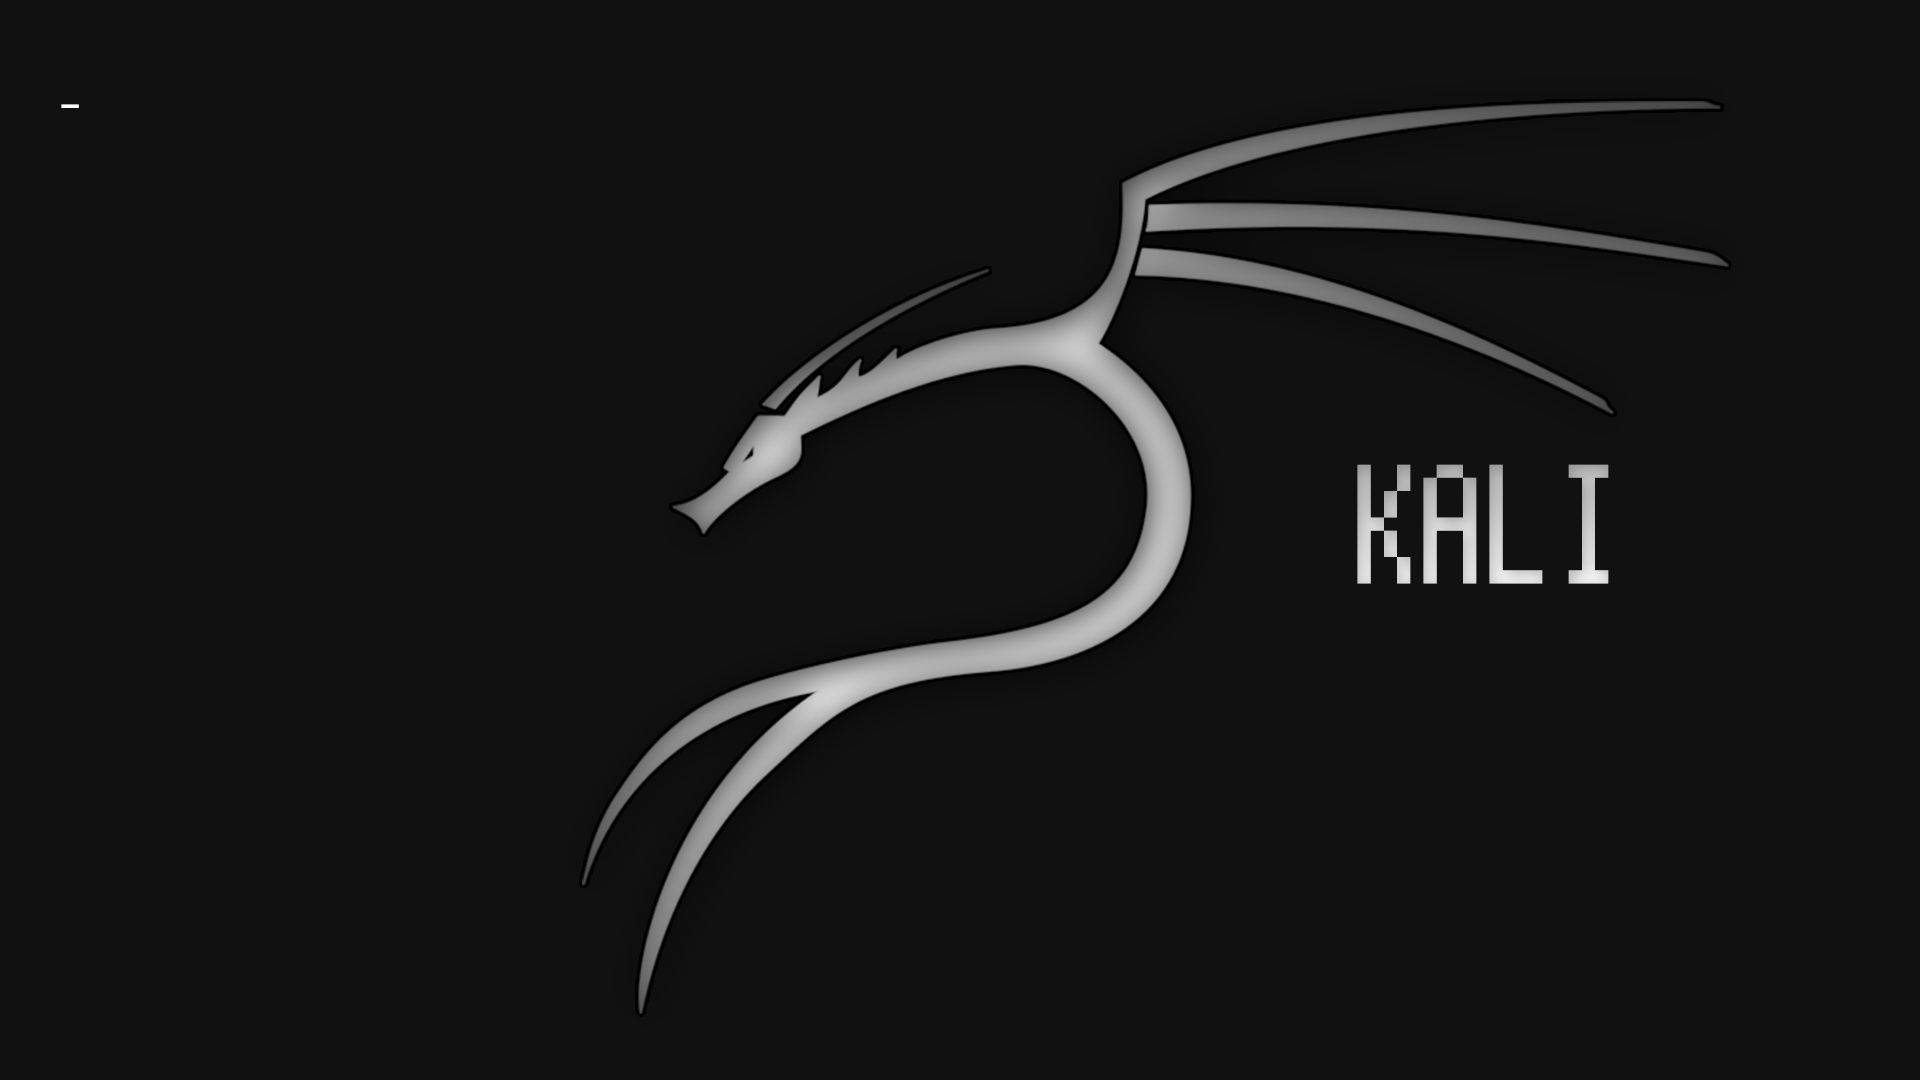 Black&White Kali Linux Wallpaper